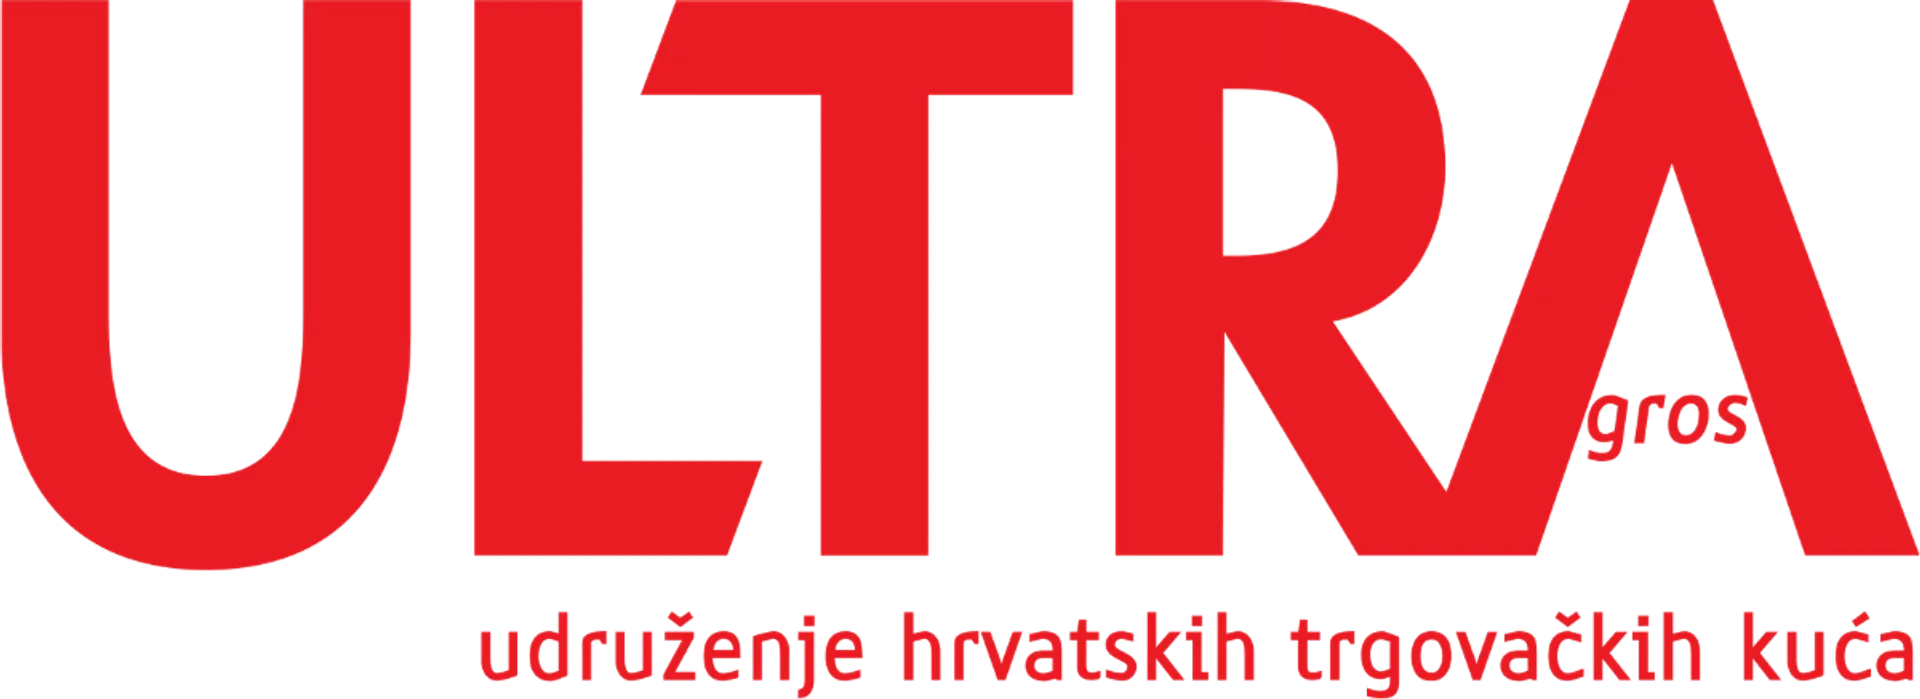 ULTRA GROS logo